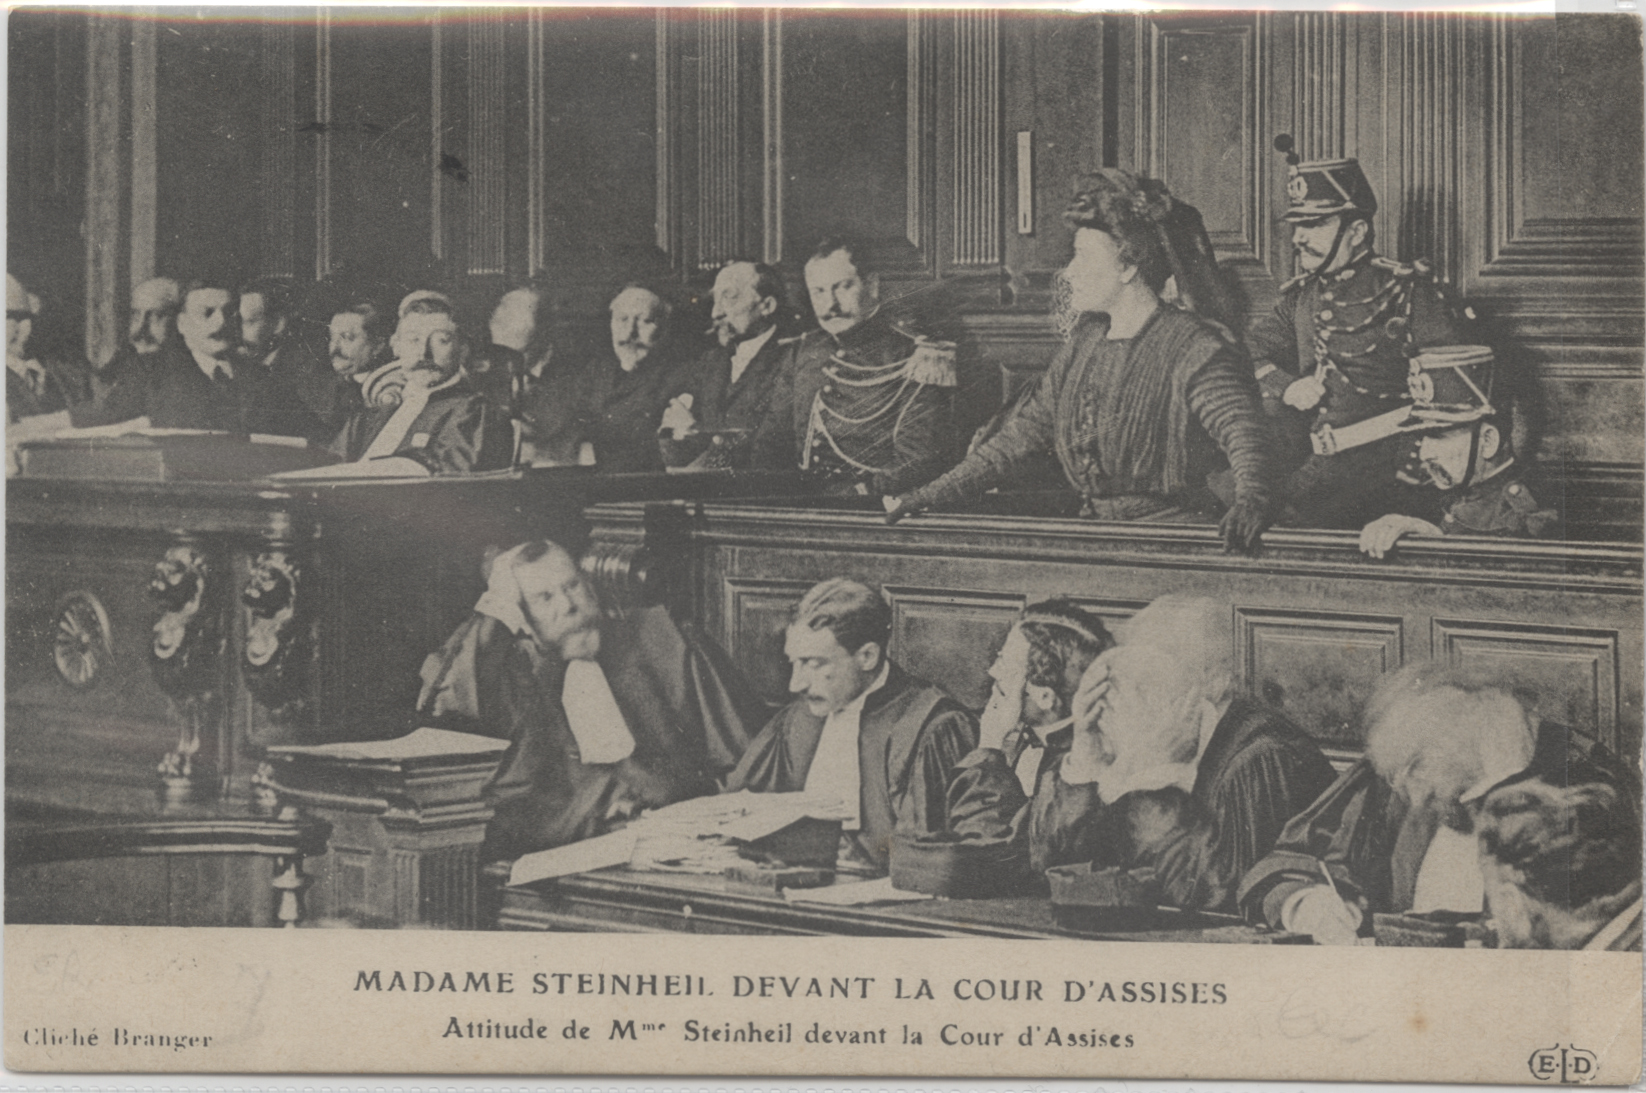 “MADAME STEINHEIL DEVANT LA COUR D’ASSISES” “Attitude de Mme Steinheil devant la Cour d’Assises”